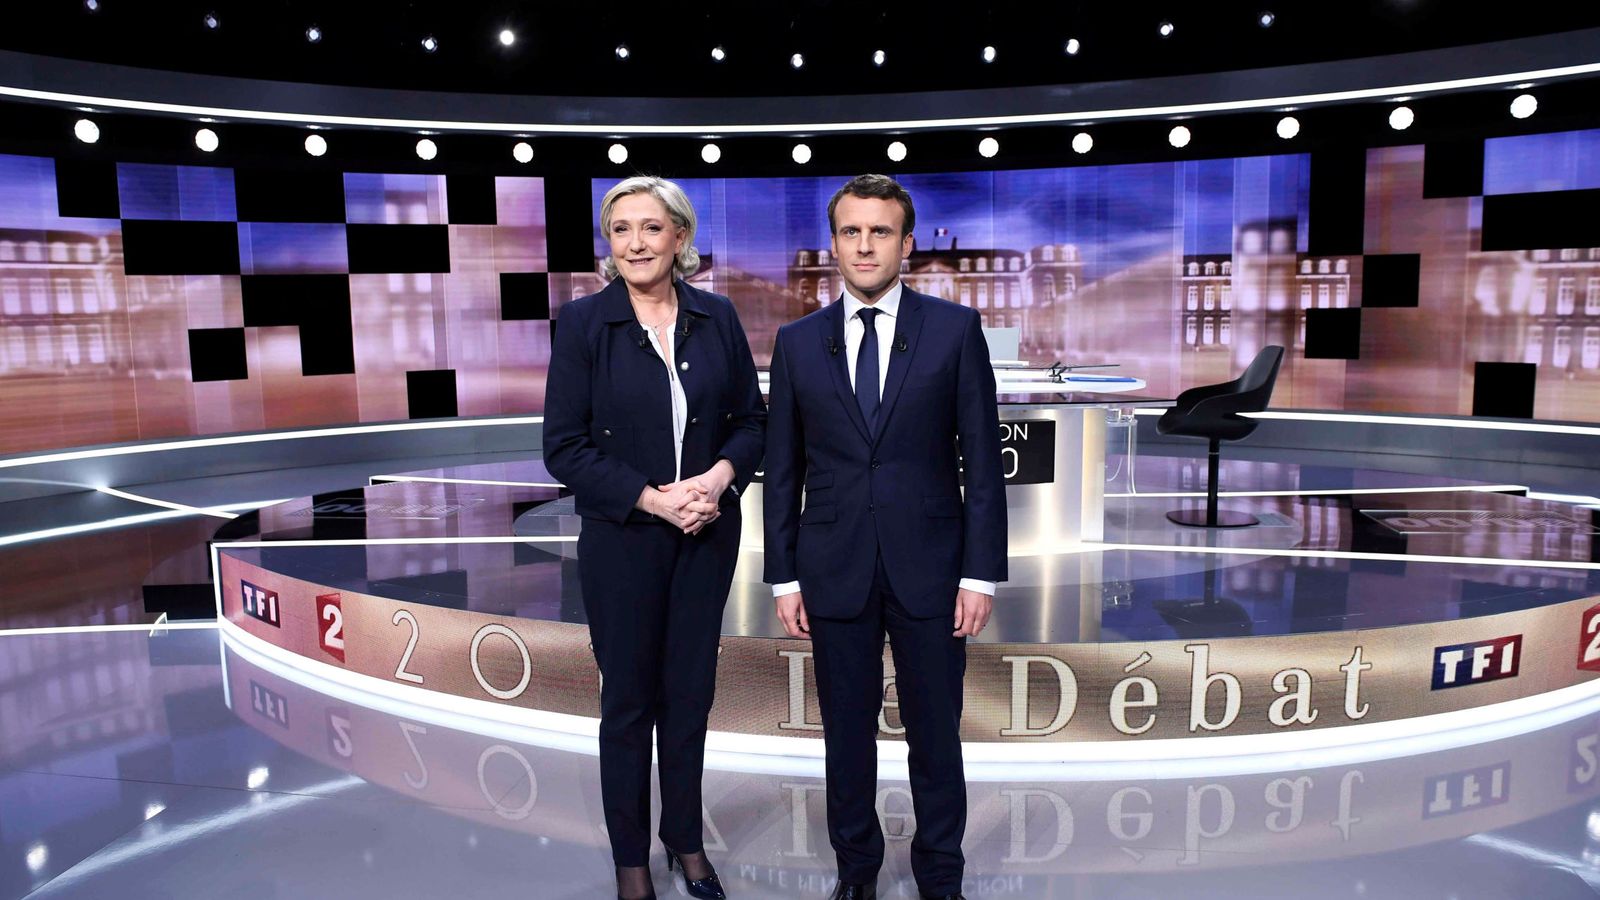 Foto: Debate entre Le Pen y Macron antes de las elecciones. (Reuters)